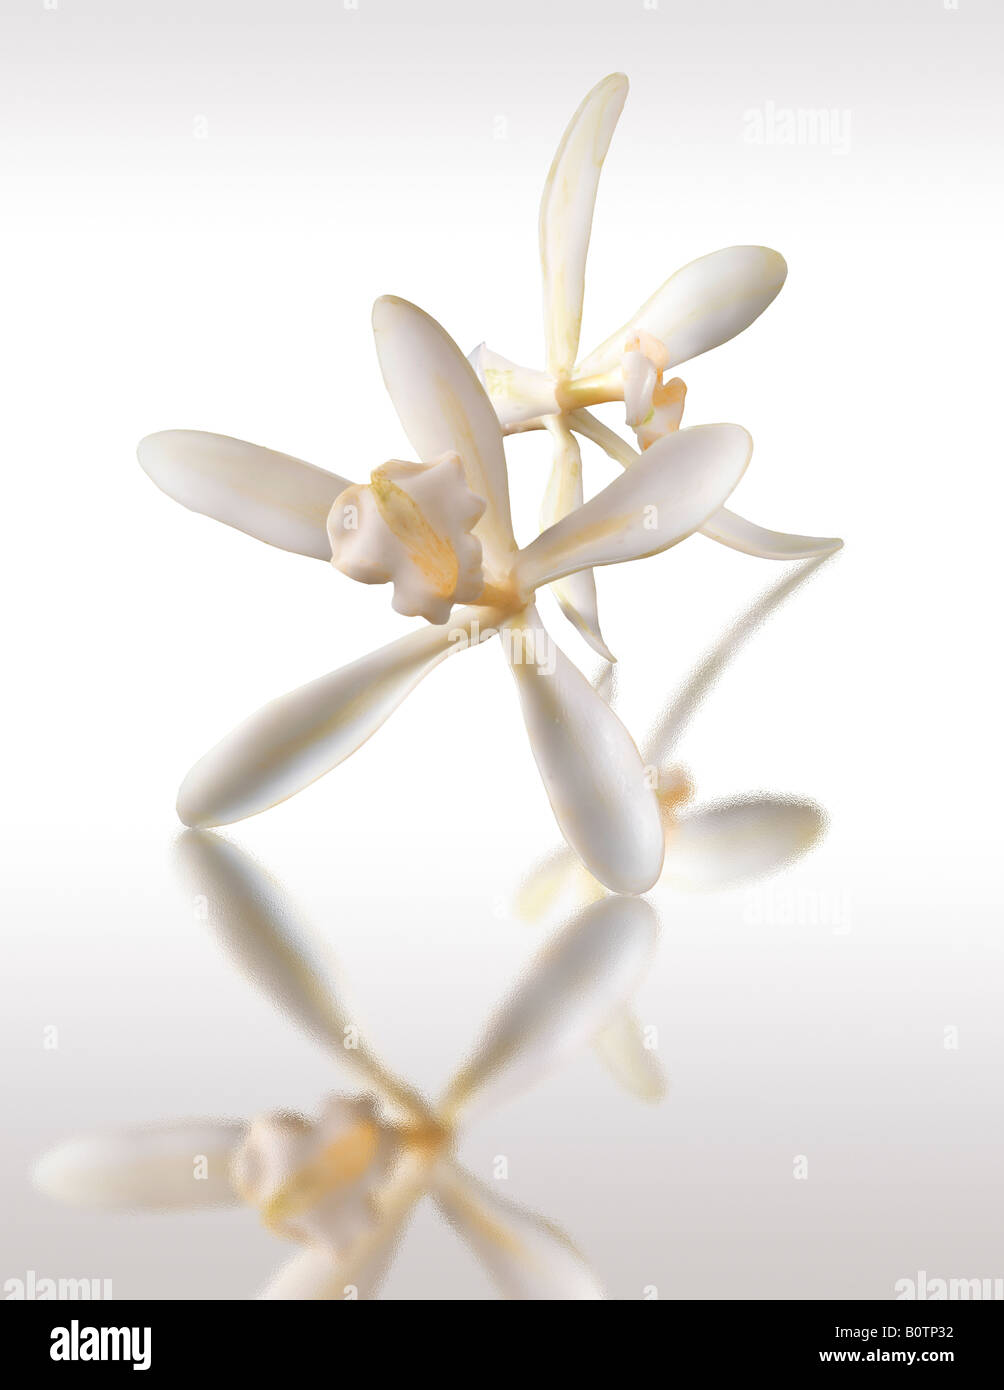 fiore bianco alla vaniglia , planifolia di vaniglia, da vicino isolato su sfondo bianco, contro bianco Foto Stock